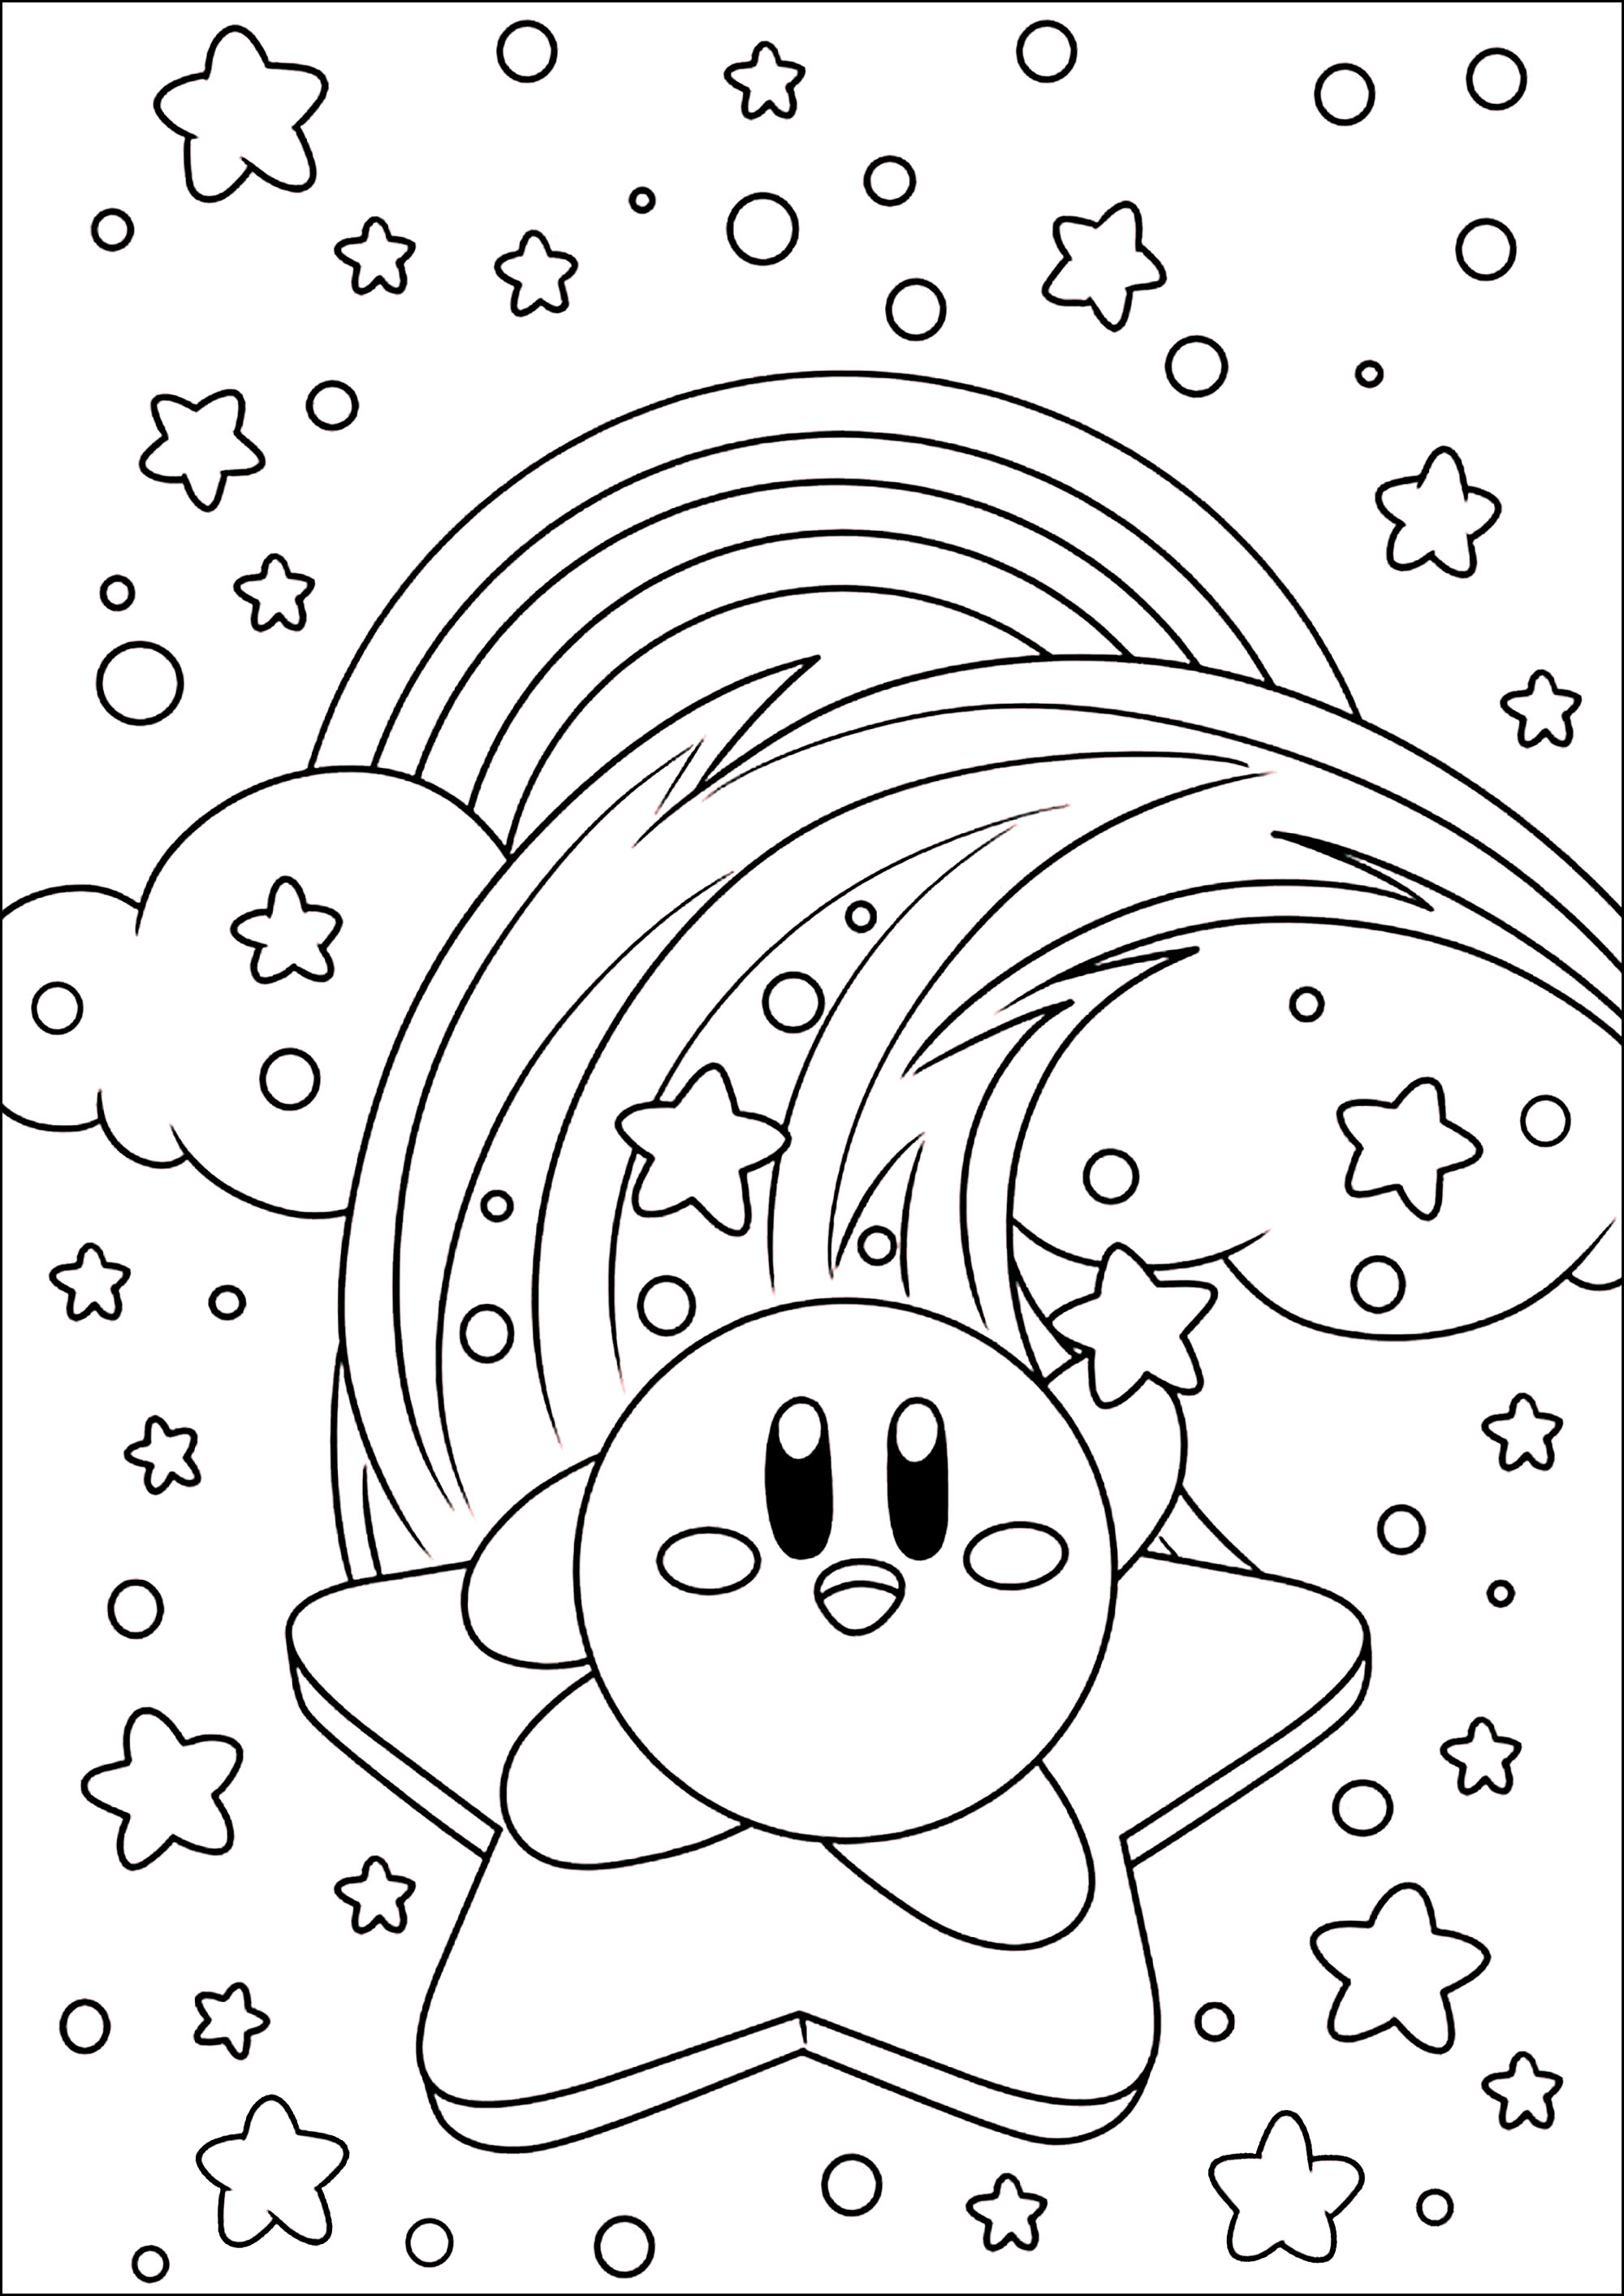 Kirby su una stella nel cielo con nuvole e arcobaleno. Kirby (カービィ, Kābī, pronuncia giapponese: [kaːbiː]) è un personaggio dei videogiochi, creato da Masahiro Sakurai per la Nintendo. È una piccola palla rosa proveniente dal pianeta Popstar che risucchia i suoi nemici per 'copiare' i loro poteri.